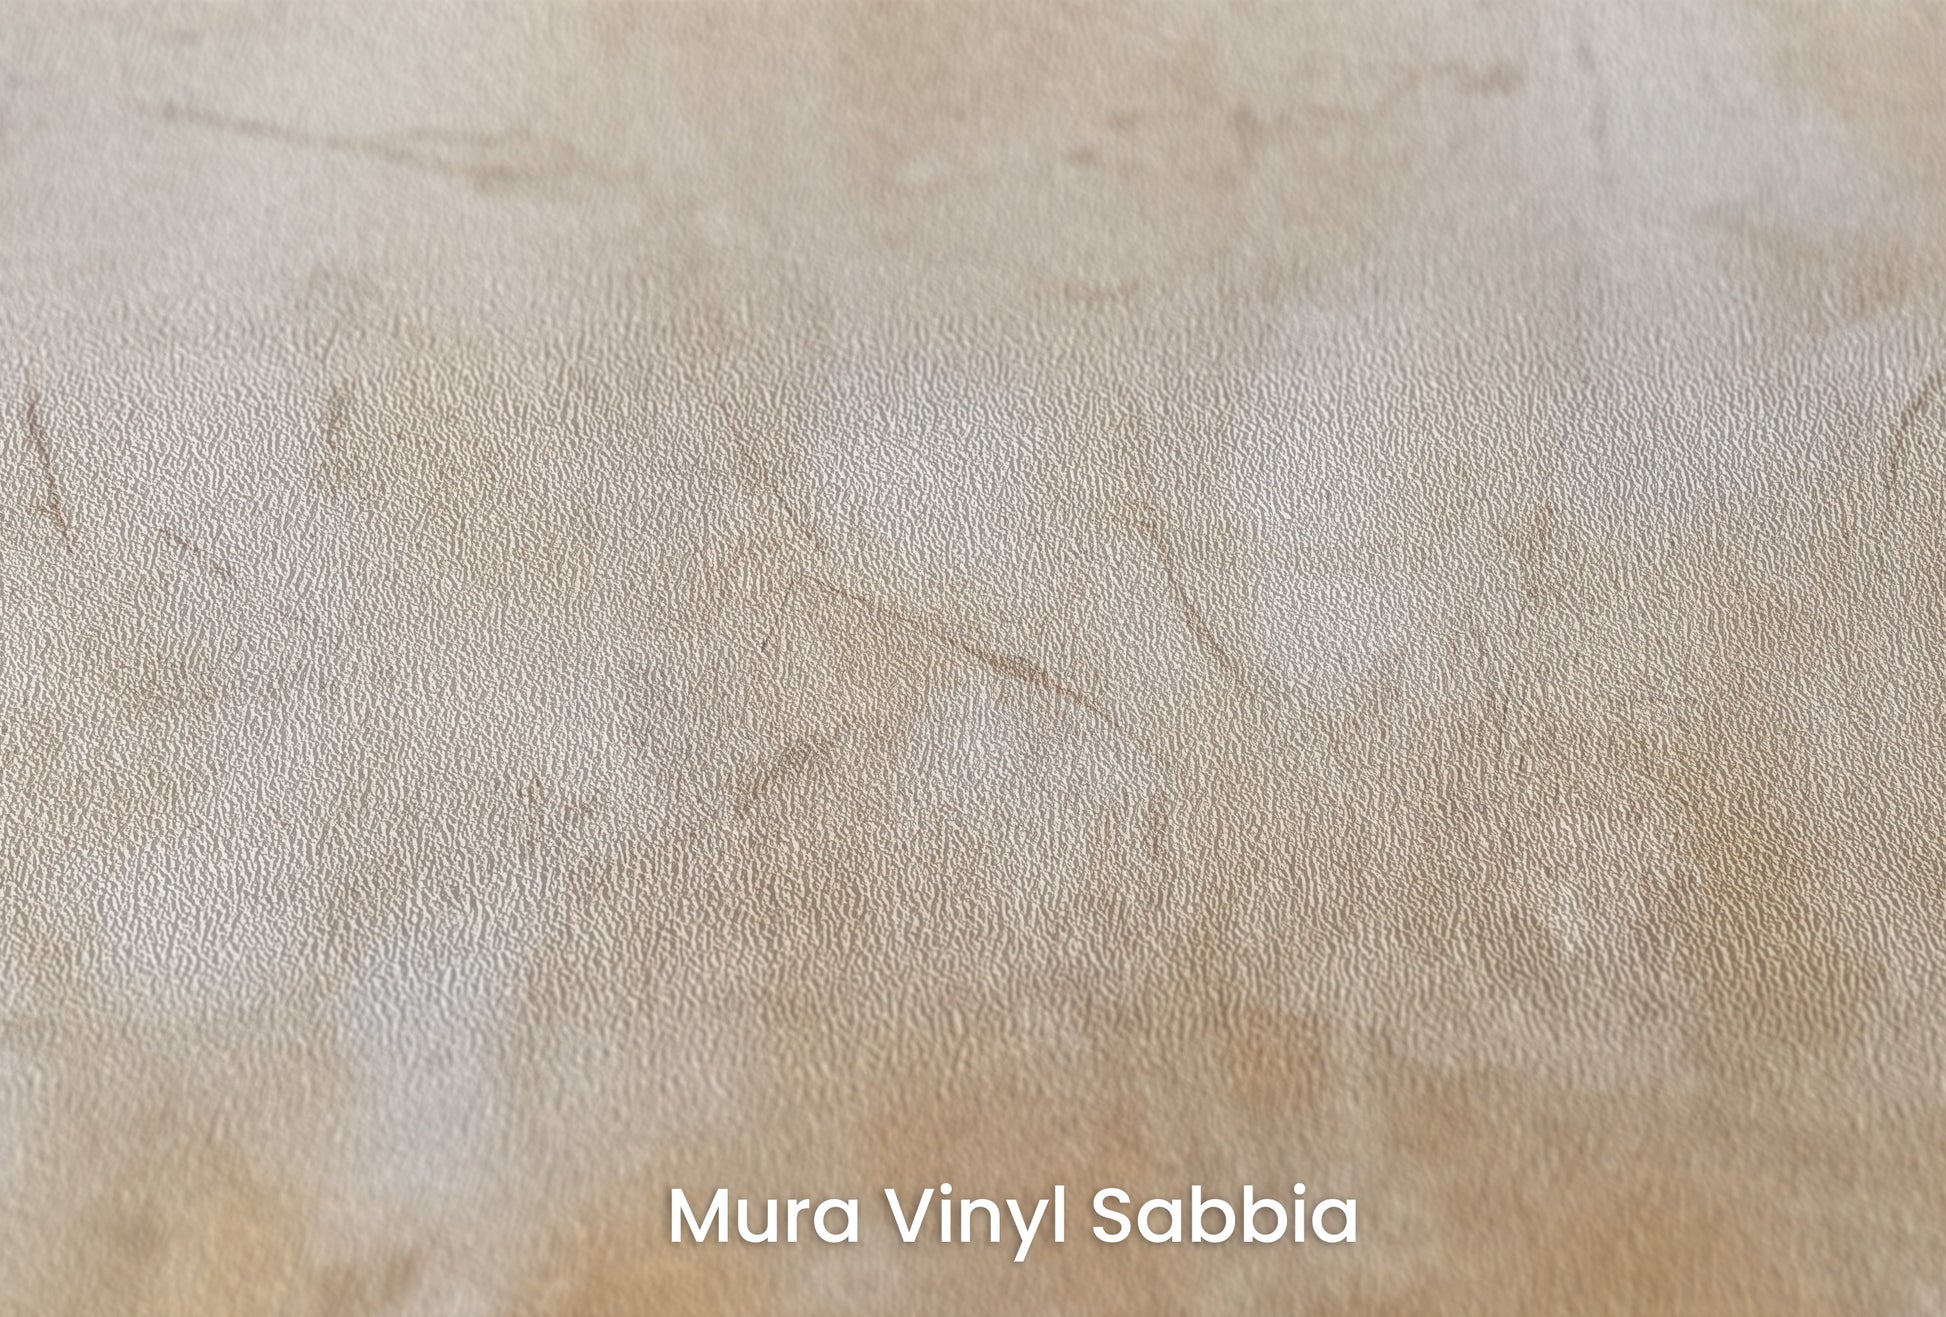 Zbliżenie na artystyczną fototapetę o nazwie RUSTIC GILDED PATINA na podłożu Mura Vinyl Sabbia struktura grubego ziarna piasku.